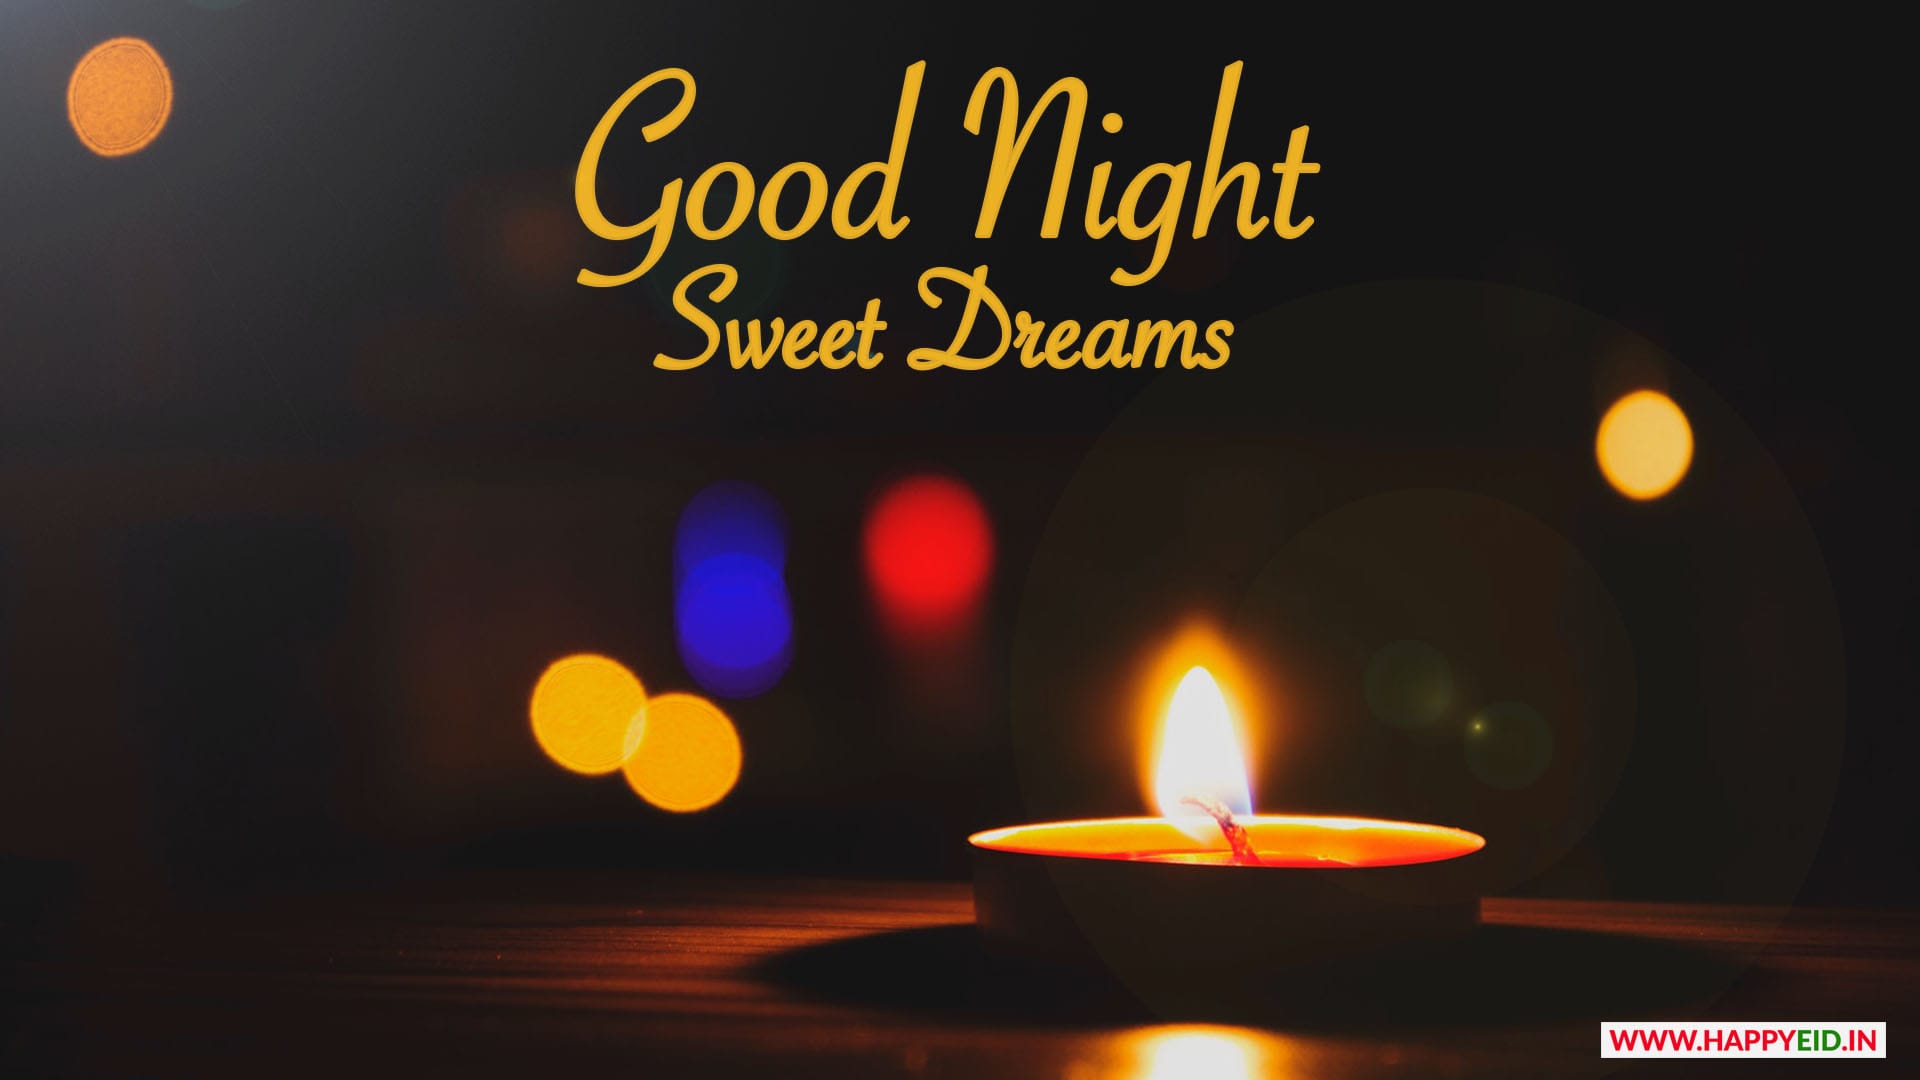 Good Night Sleep Dreams Status Image.